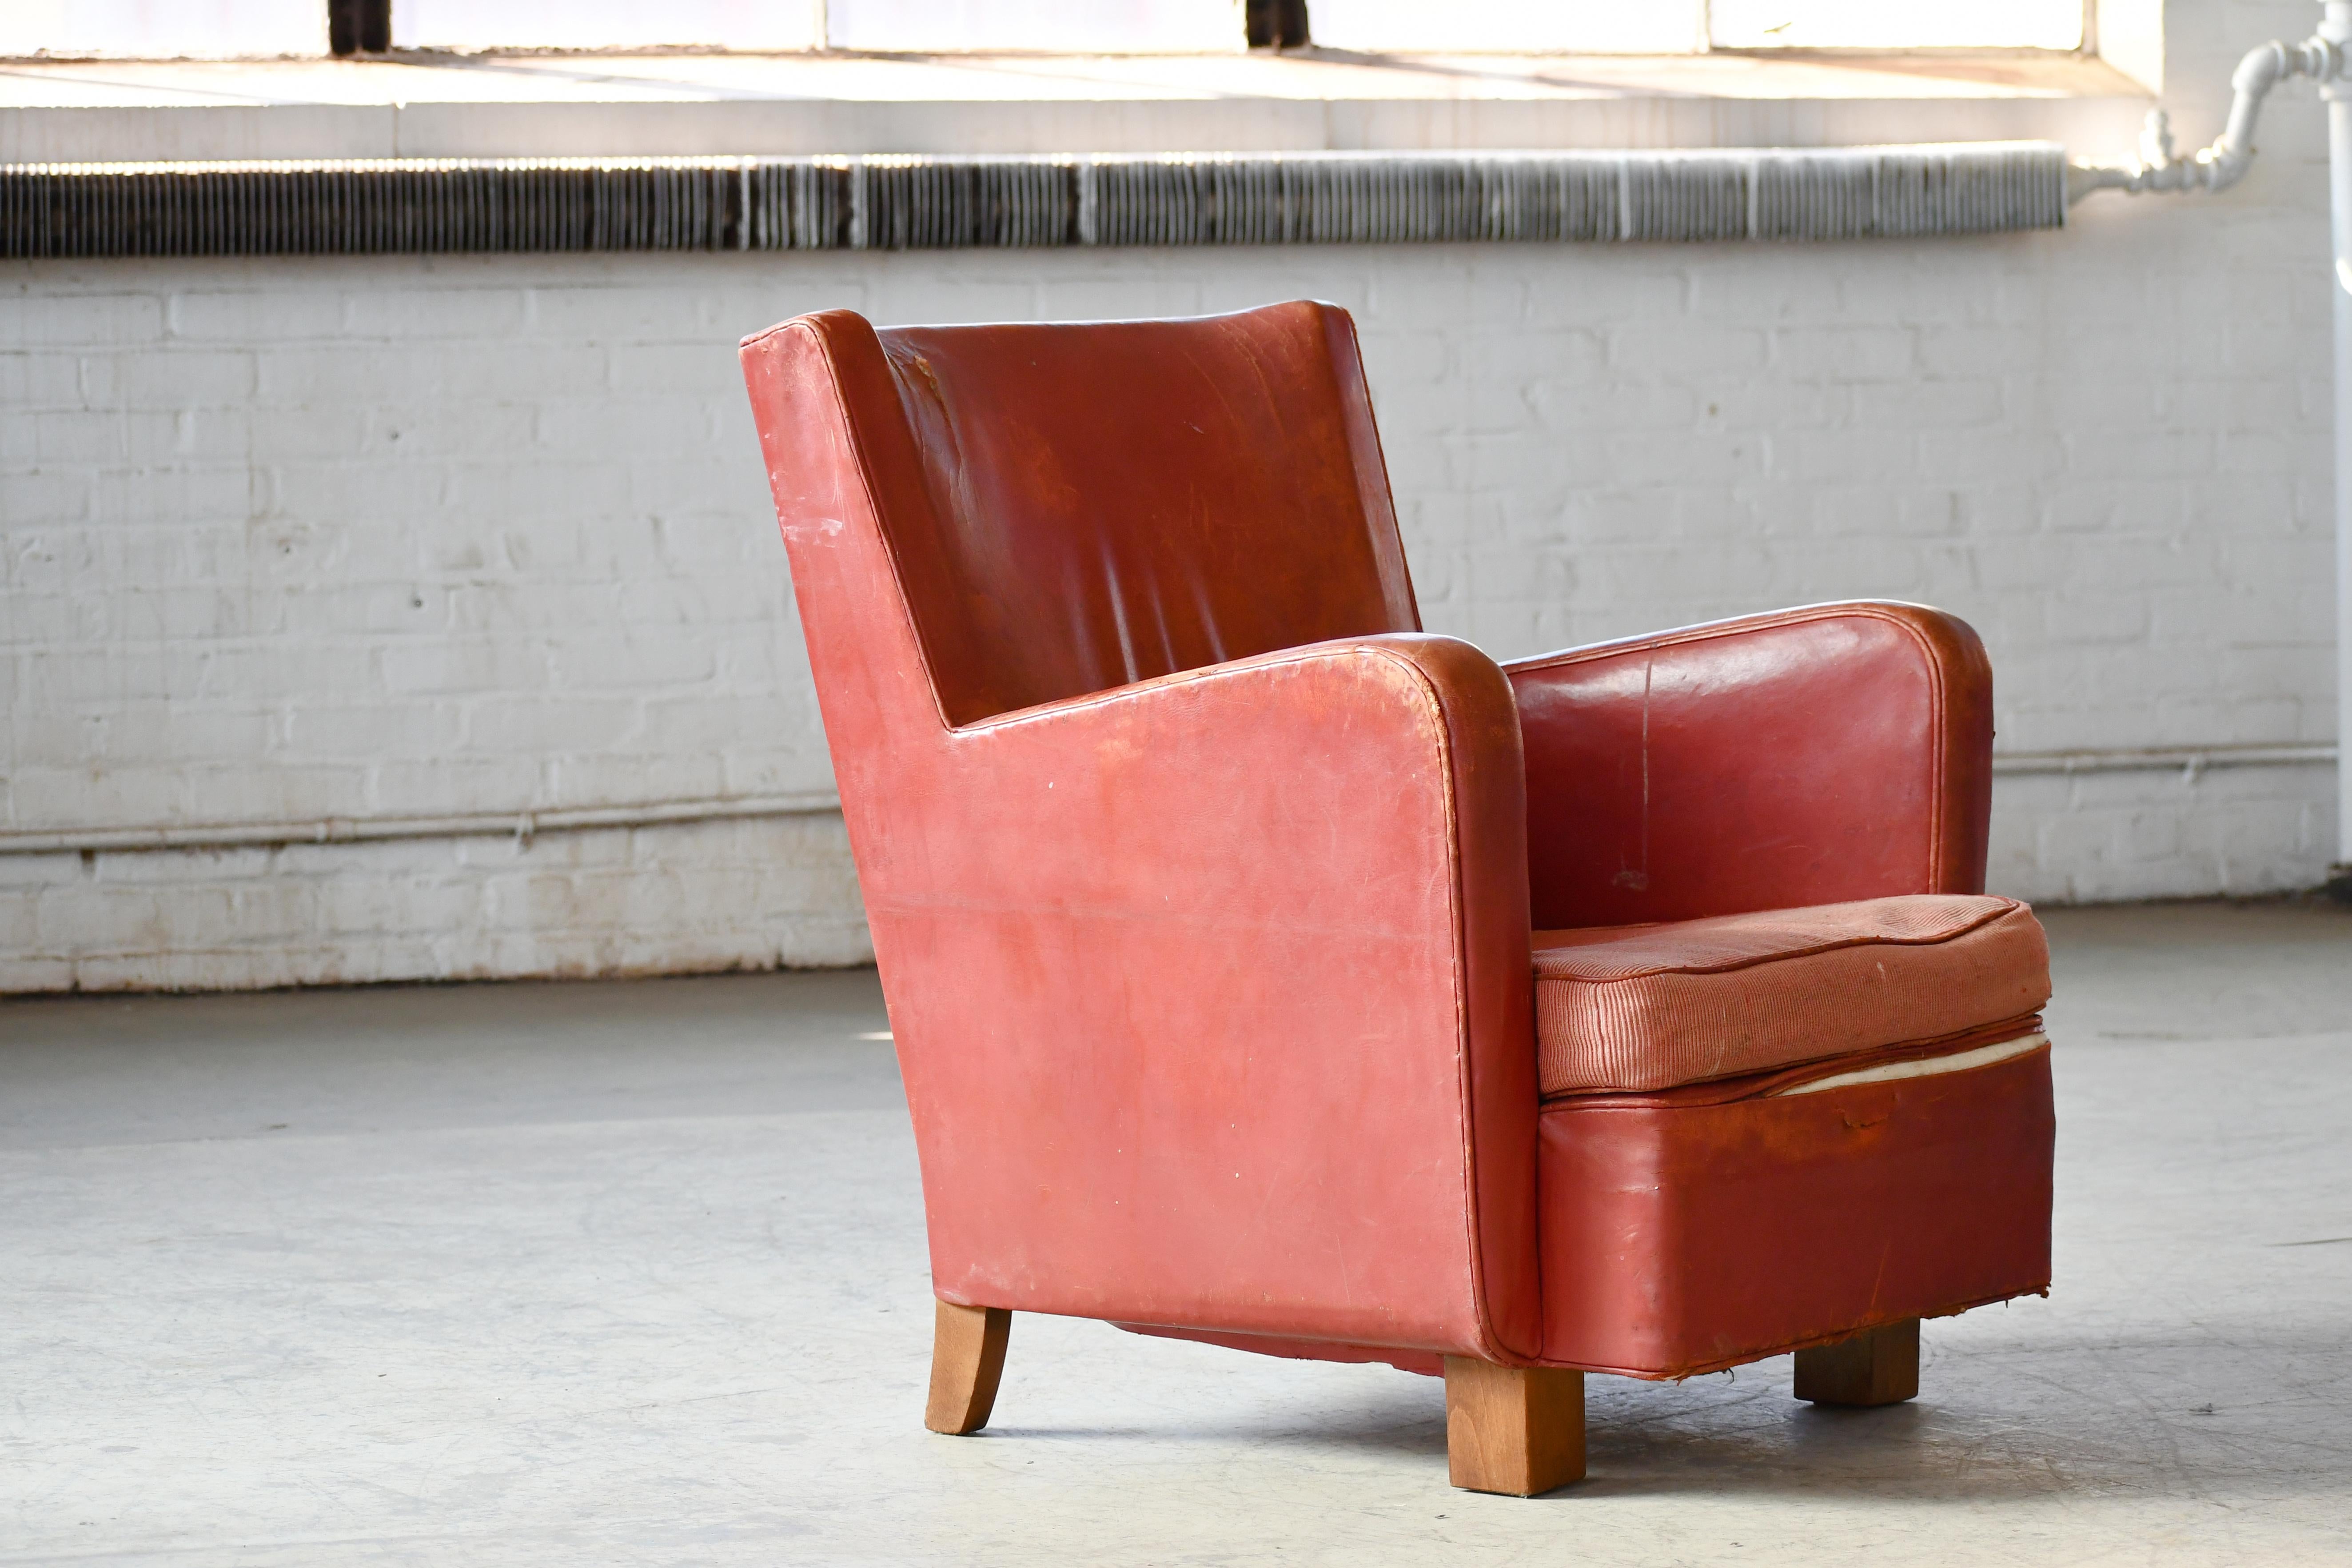 Chaise longue géométrique danoise moderne des années 1930 en cuir rougeâtre V 1